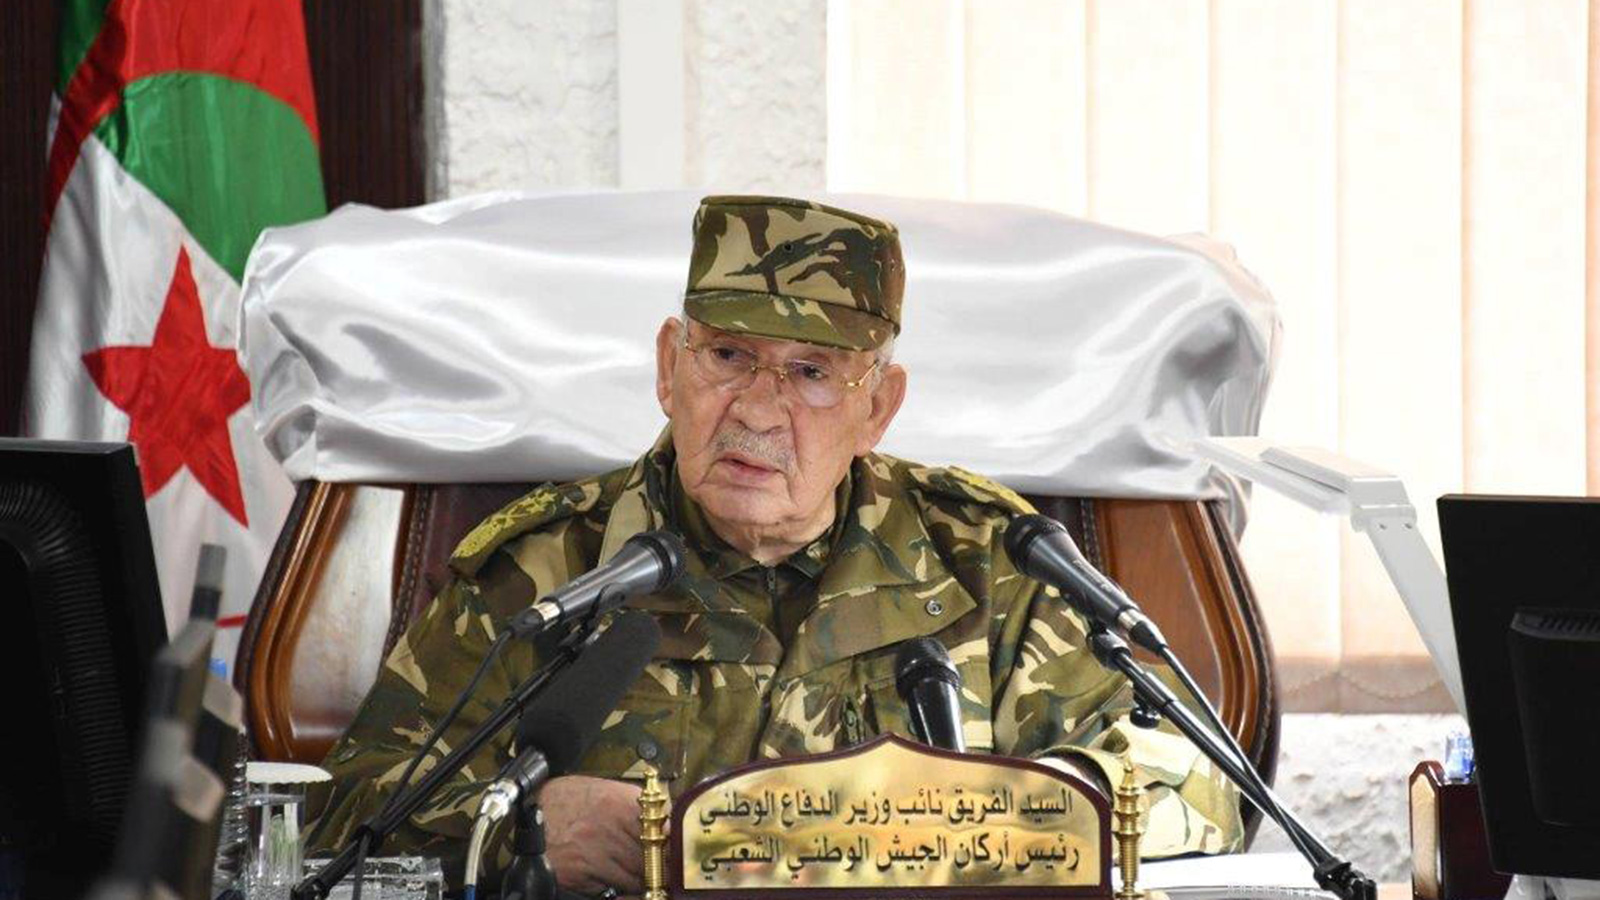 قايد صالح رفض في كلمة الثلاثاء الماضي مطالب هيئة الحوار واعتبرها شروطا مسبقة (وزارة الدفاع)